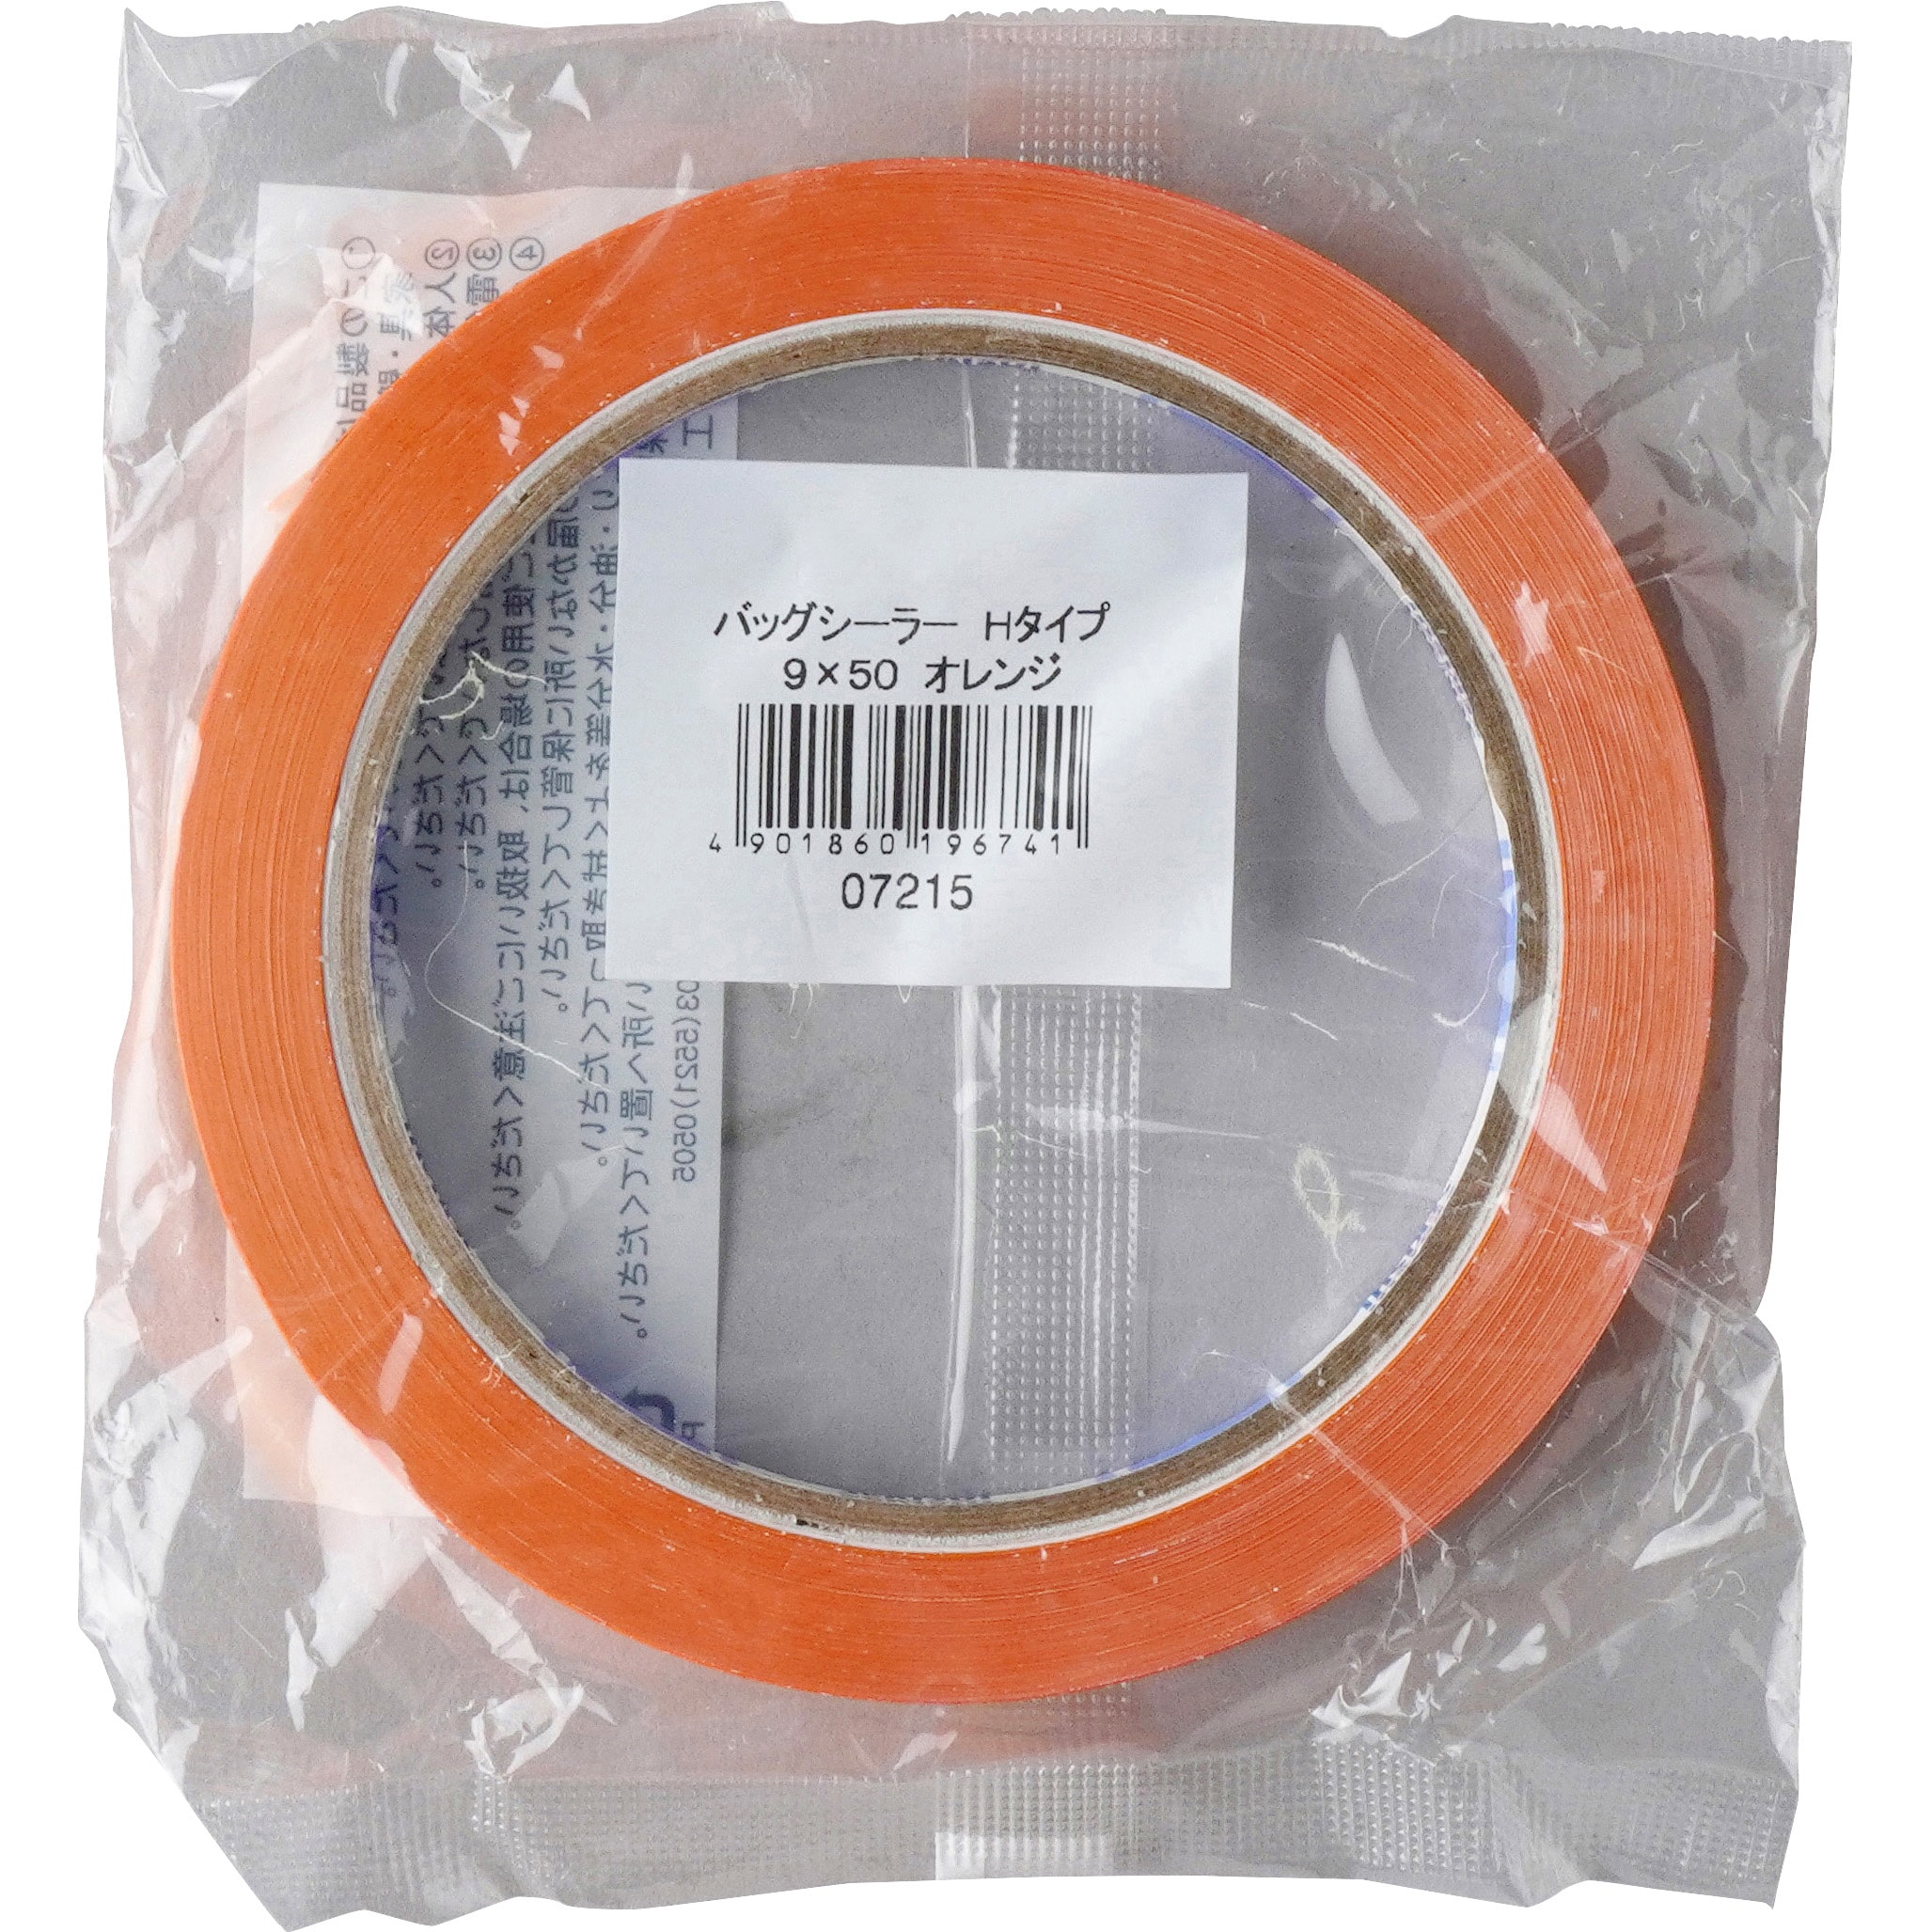 ケース販売積水化学工業 バッグシーラーテープ Hタイプ 9×50 やさい緑 002000021 1ケース(200巻入) - 1